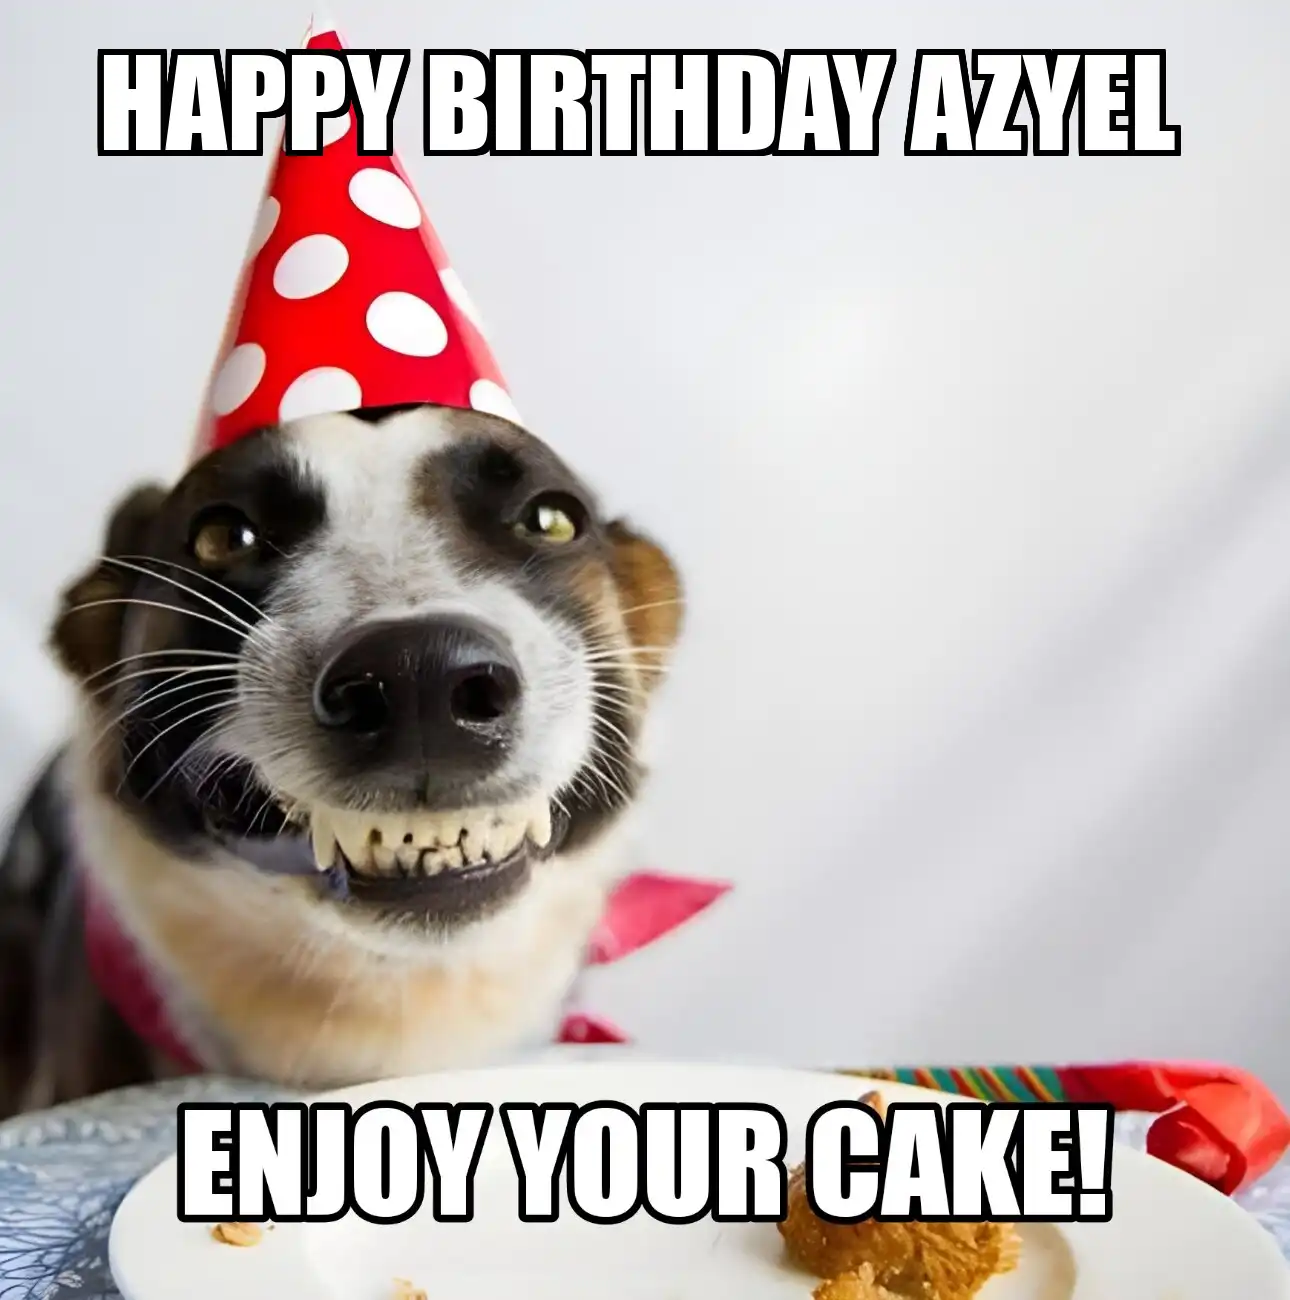 Happy Birthday Azyel Enjoy Your Cake Dog Meme